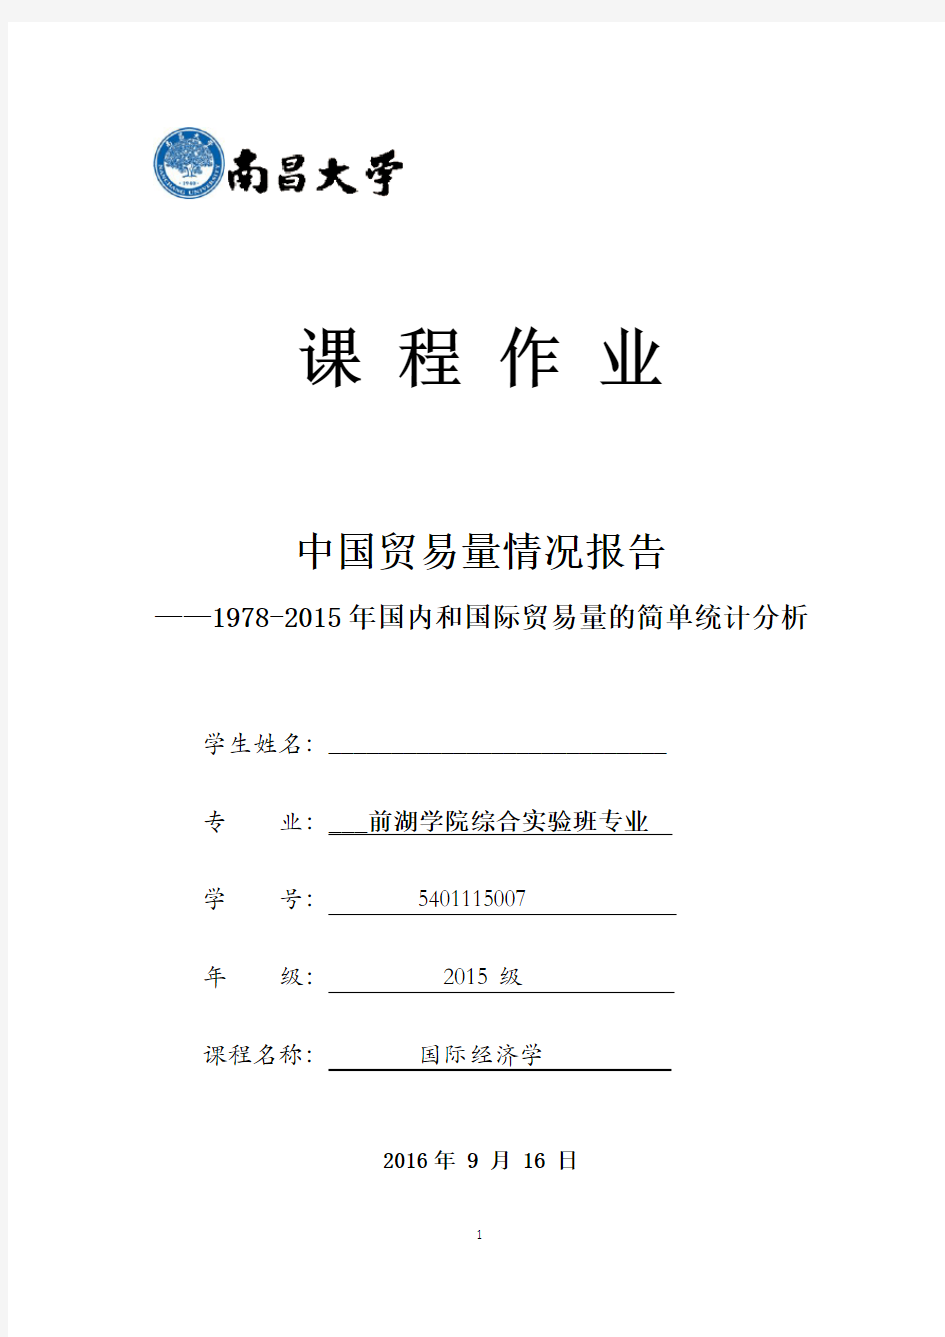 中国贸易量情况报告1978至2015年国内和国际贸易量的简单统计分析(原版)